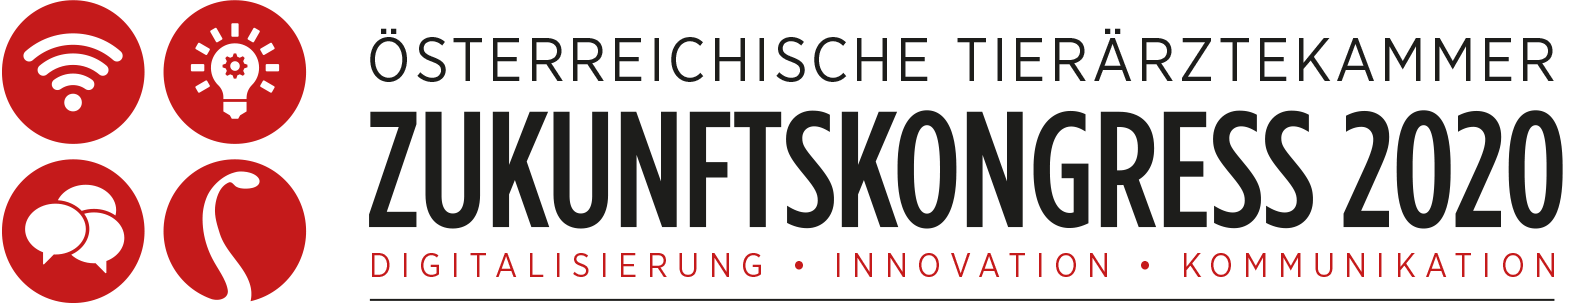 Österreichische Tierärztekammer | Zukunftskongress 2020 | Digitalisierung, Innovation, Kommunikation